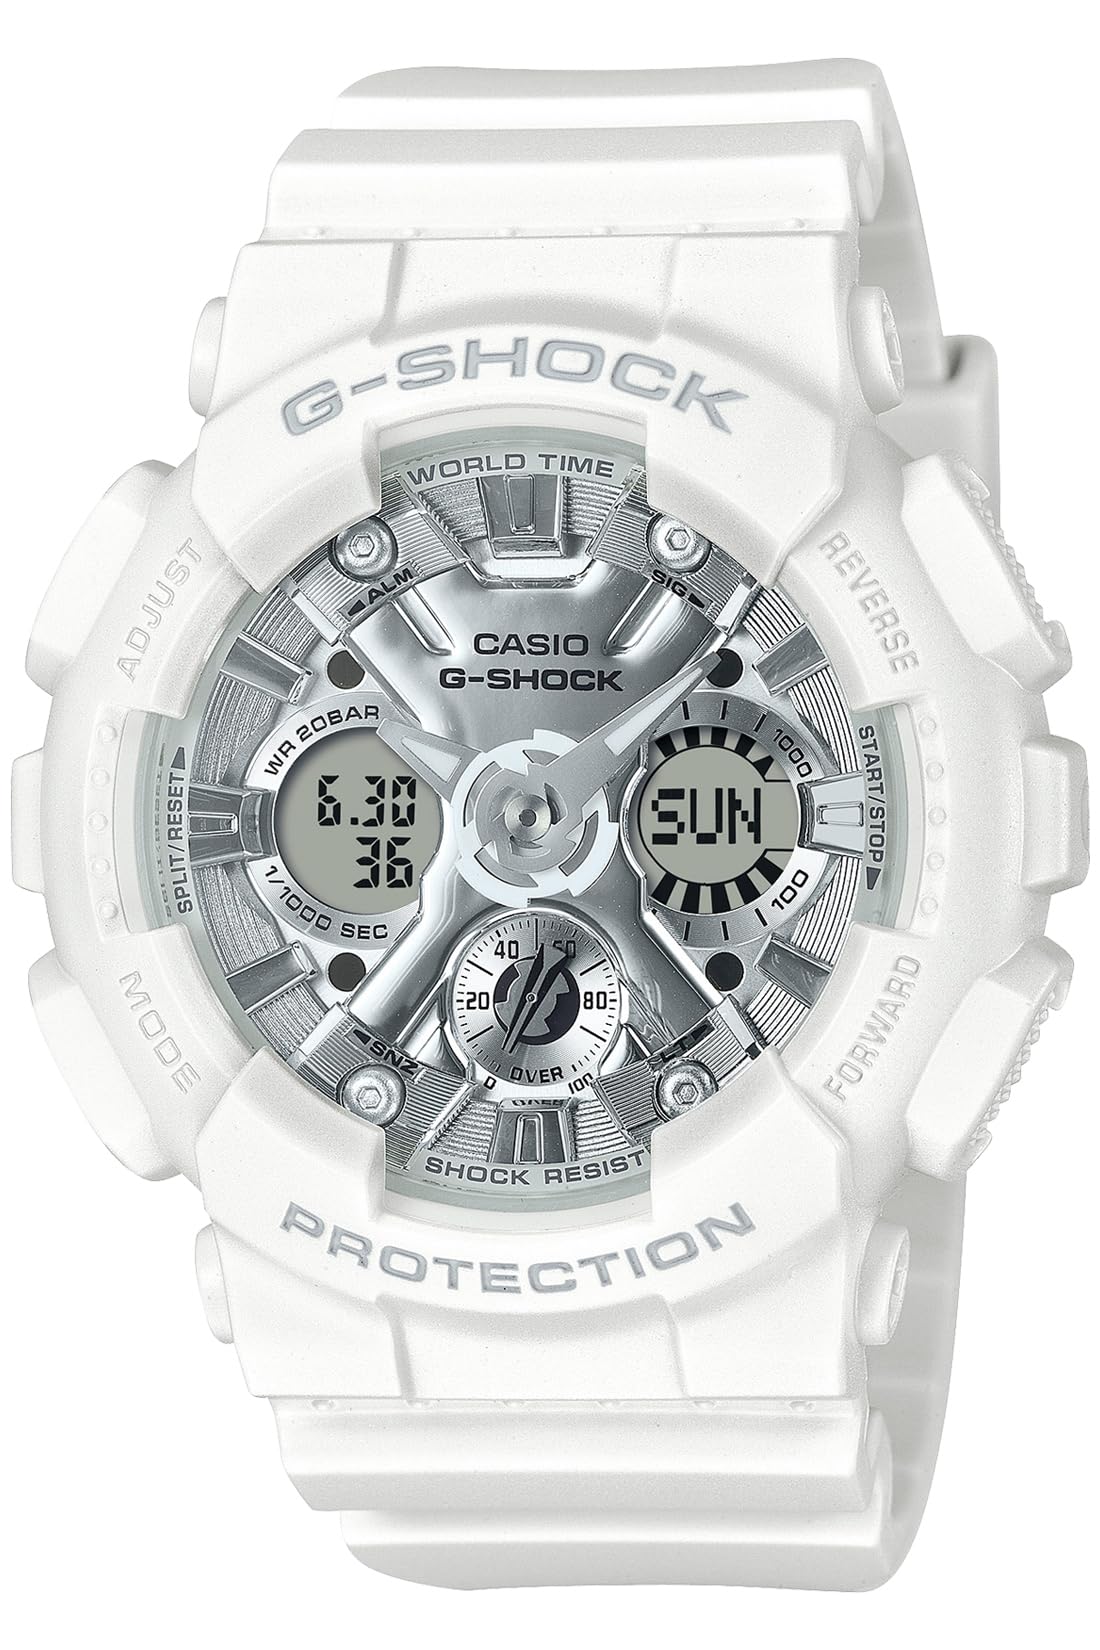 ジーショック [カシオ] 腕時計 【国内正規品】バイオマスプラスチック採用 GMA-S120VA-7AJF レディース ホワイト - BanzaiHobby